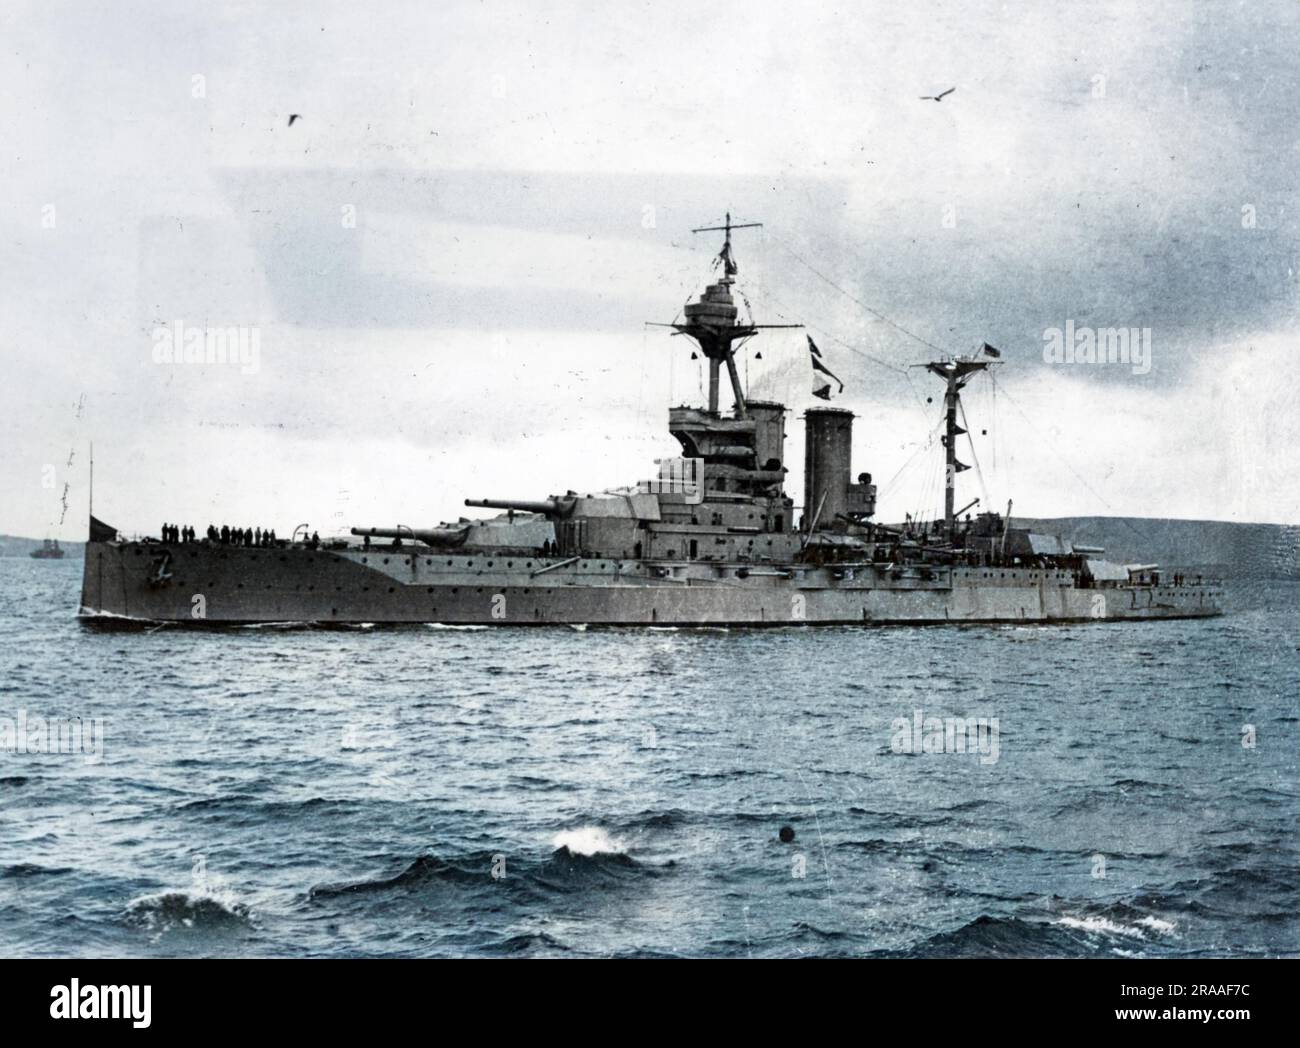 HMS Warspite, una nave da battaglia classe Queen Elizabeth, varata nel 1913. Servì durante la prima guerra mondiale, prendendo parte alla battaglia dello Jutland (1916), e servì anche per tutta la seconda guerra mondiale. Data: 1914-1918 Foto Stock